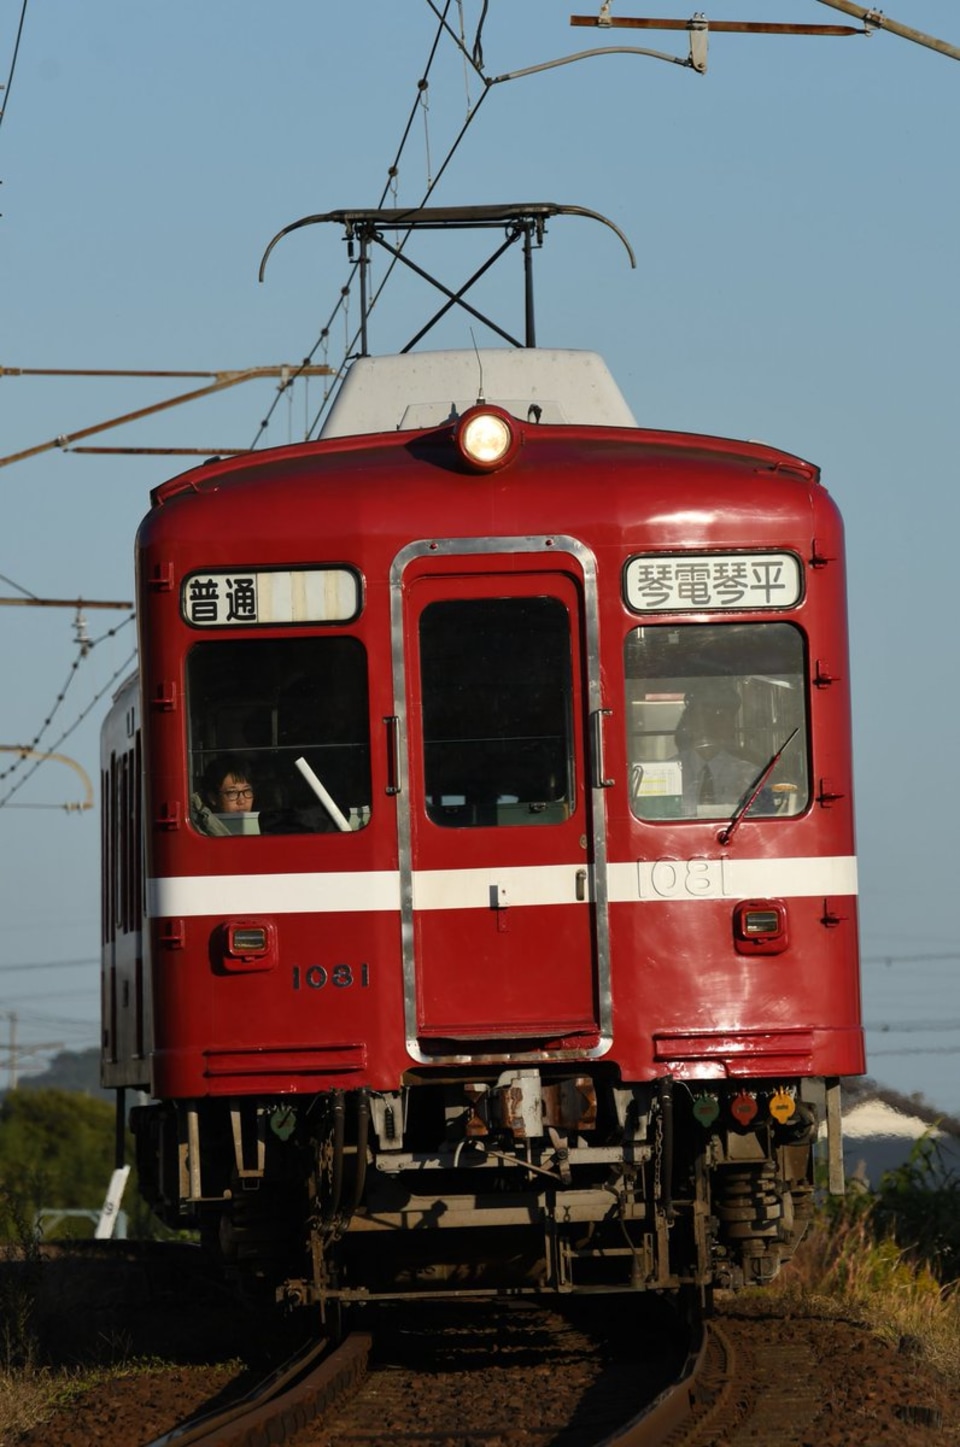 【ことでん】還暦の赤い電車1081編成HMとことでんロゴを外して運用開始の拡大写真